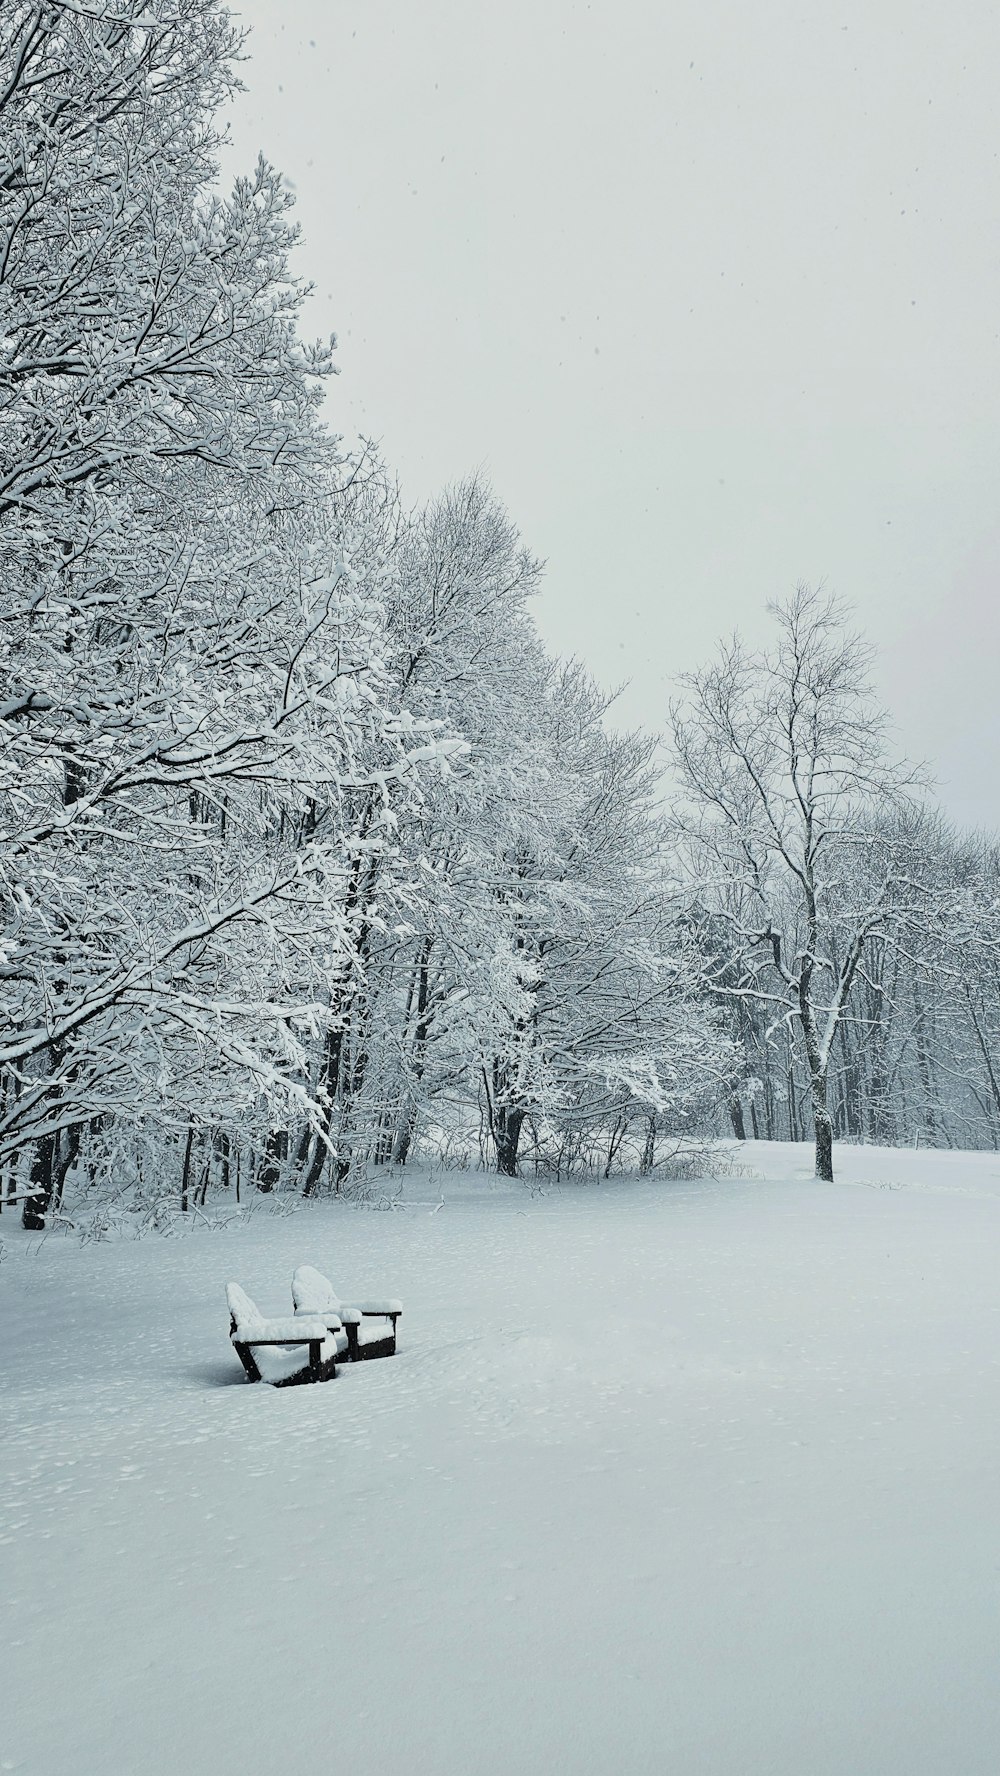 Una panchina del parco coperta di neve accanto agli alberi